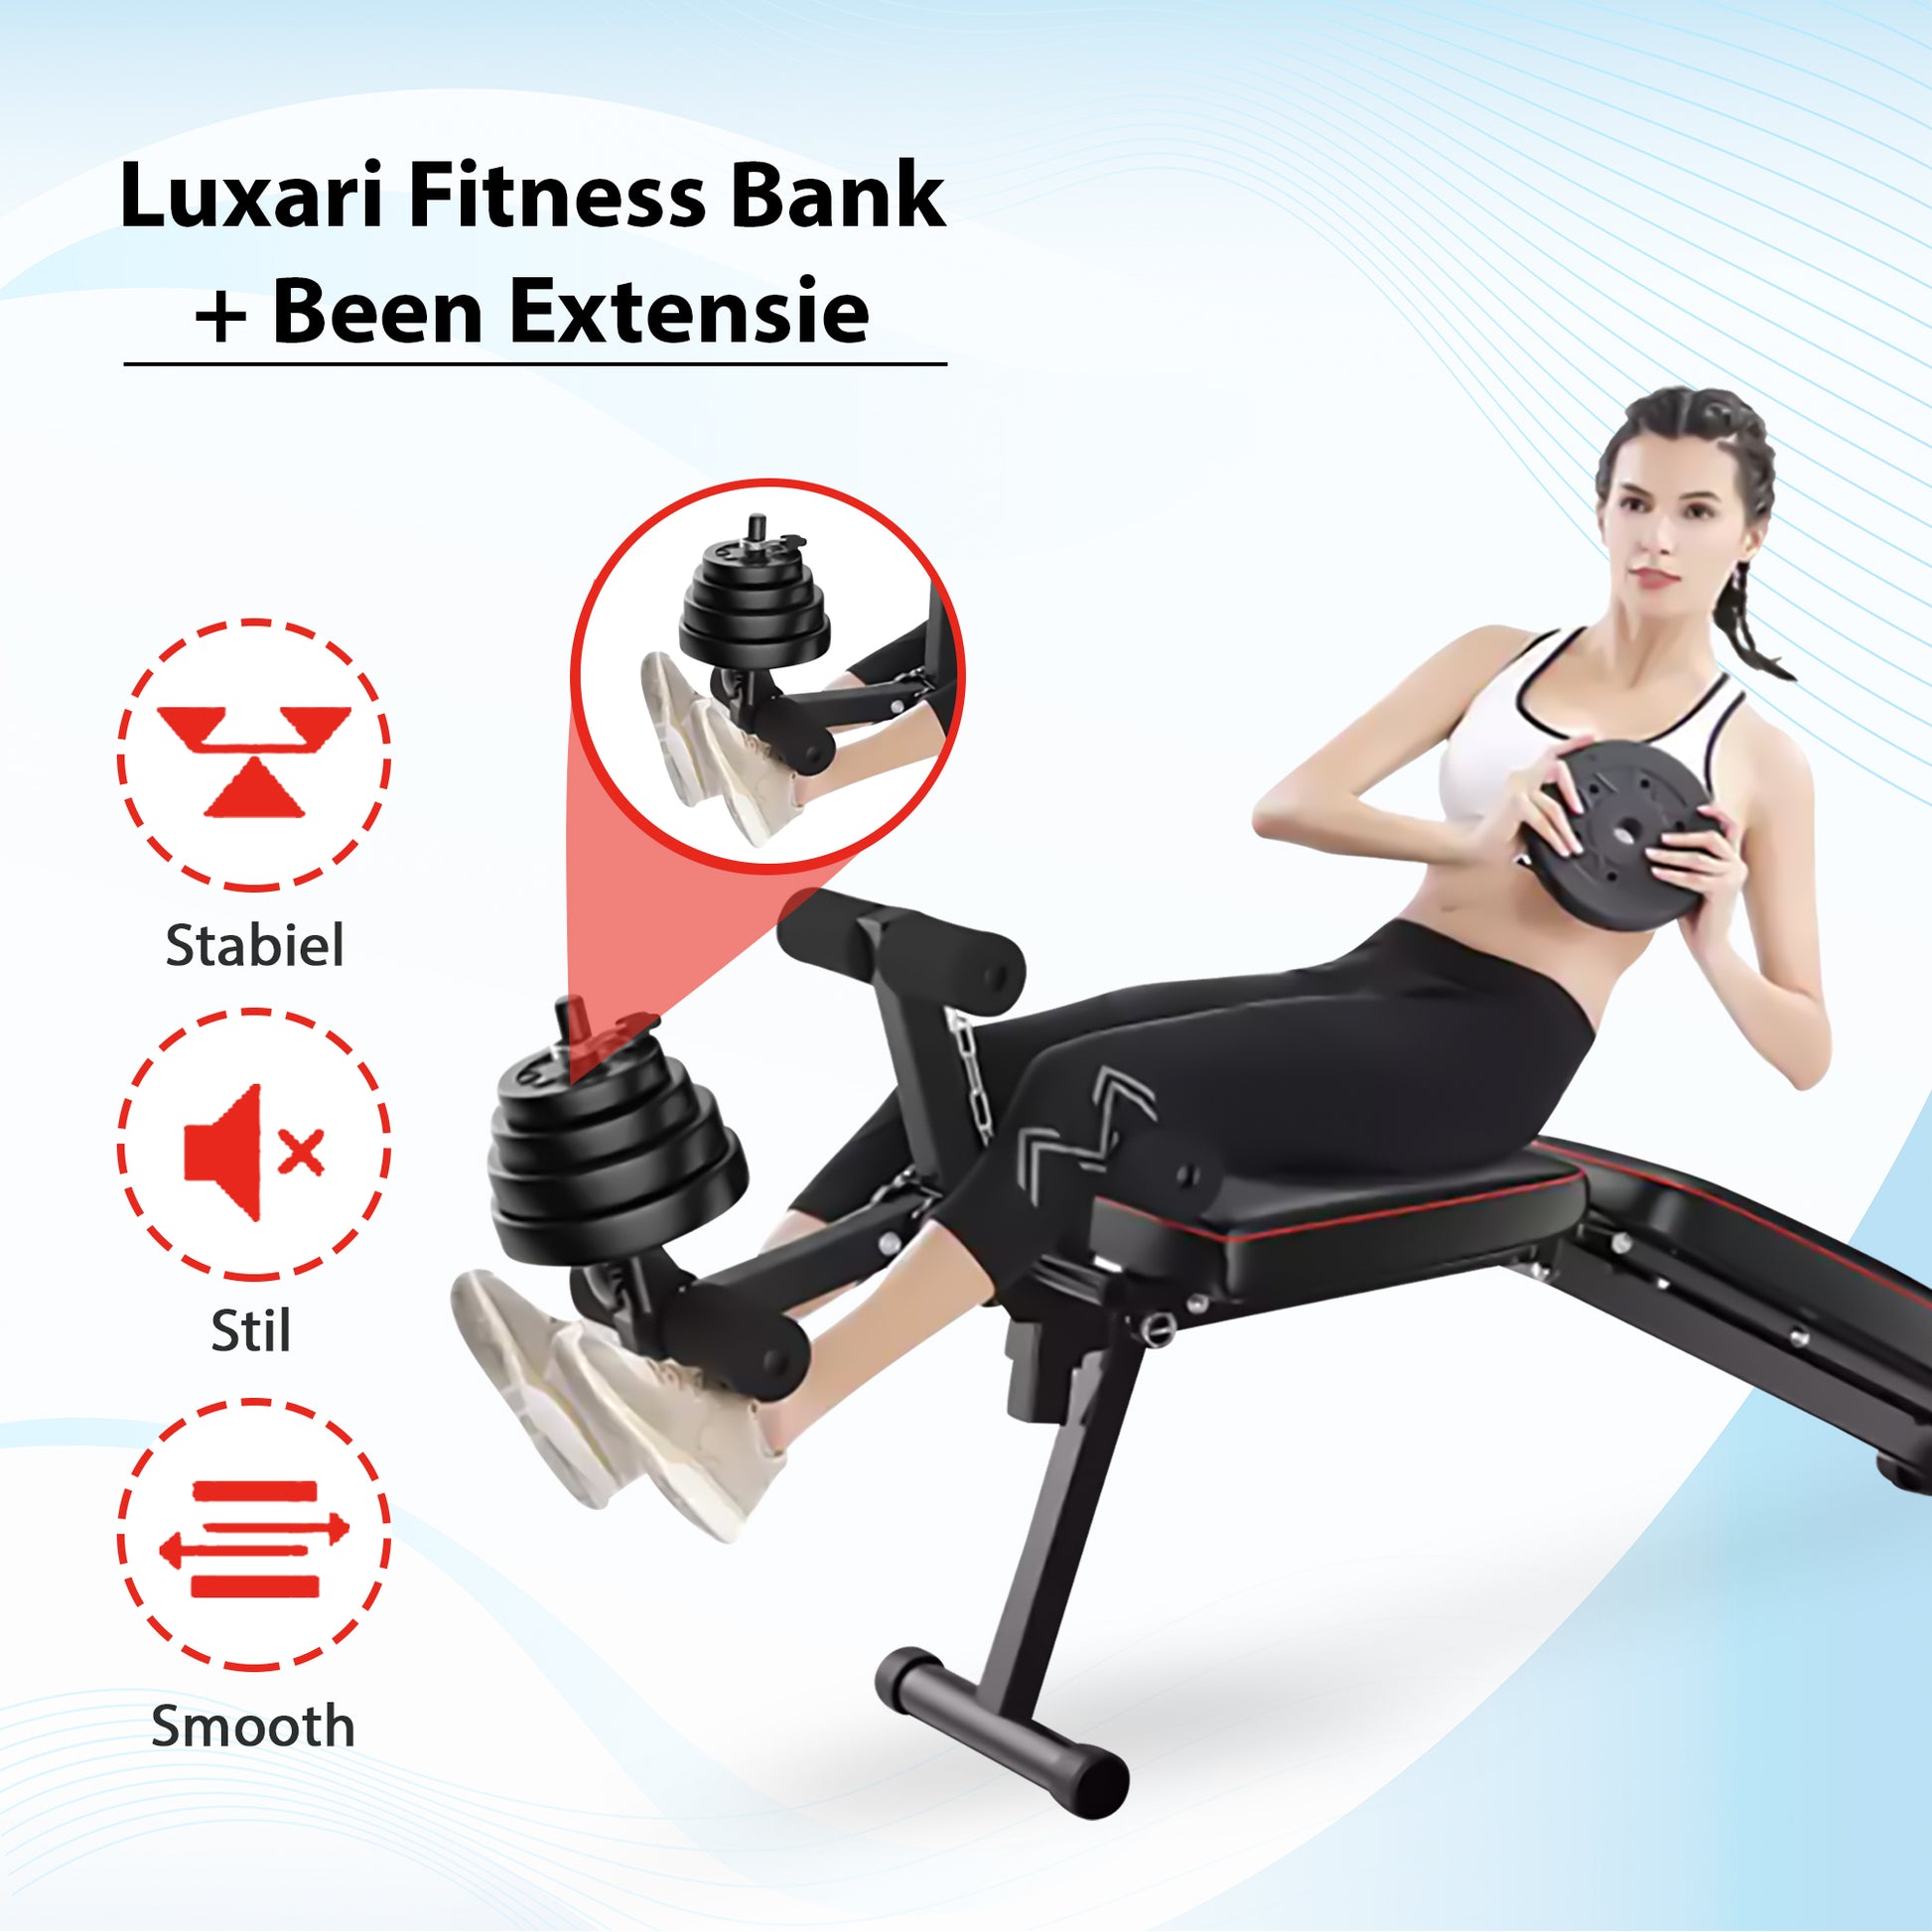 Onenigheid Circulaire vaardigheid Luxari - Fitness Bank + Been Extensie – LuxariFitness